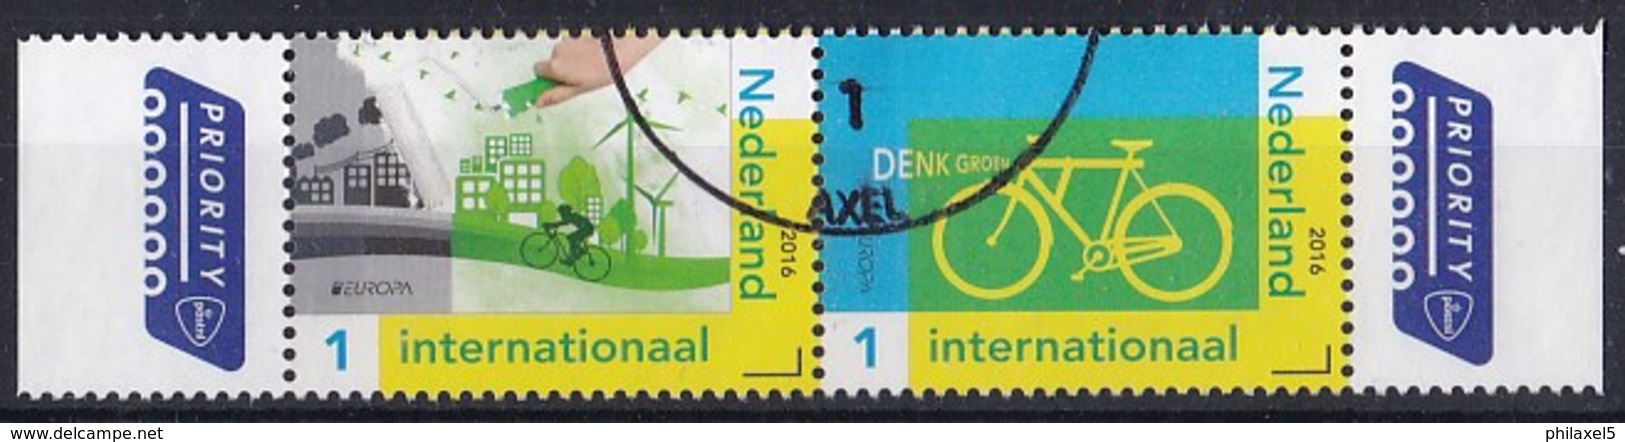 Nederland - PostEurop 2016 - Denk Groen - Fiets/windmolens - Gebruikt/gebraucht/used - NVPH 3399/3400 Strook - Gebruikt